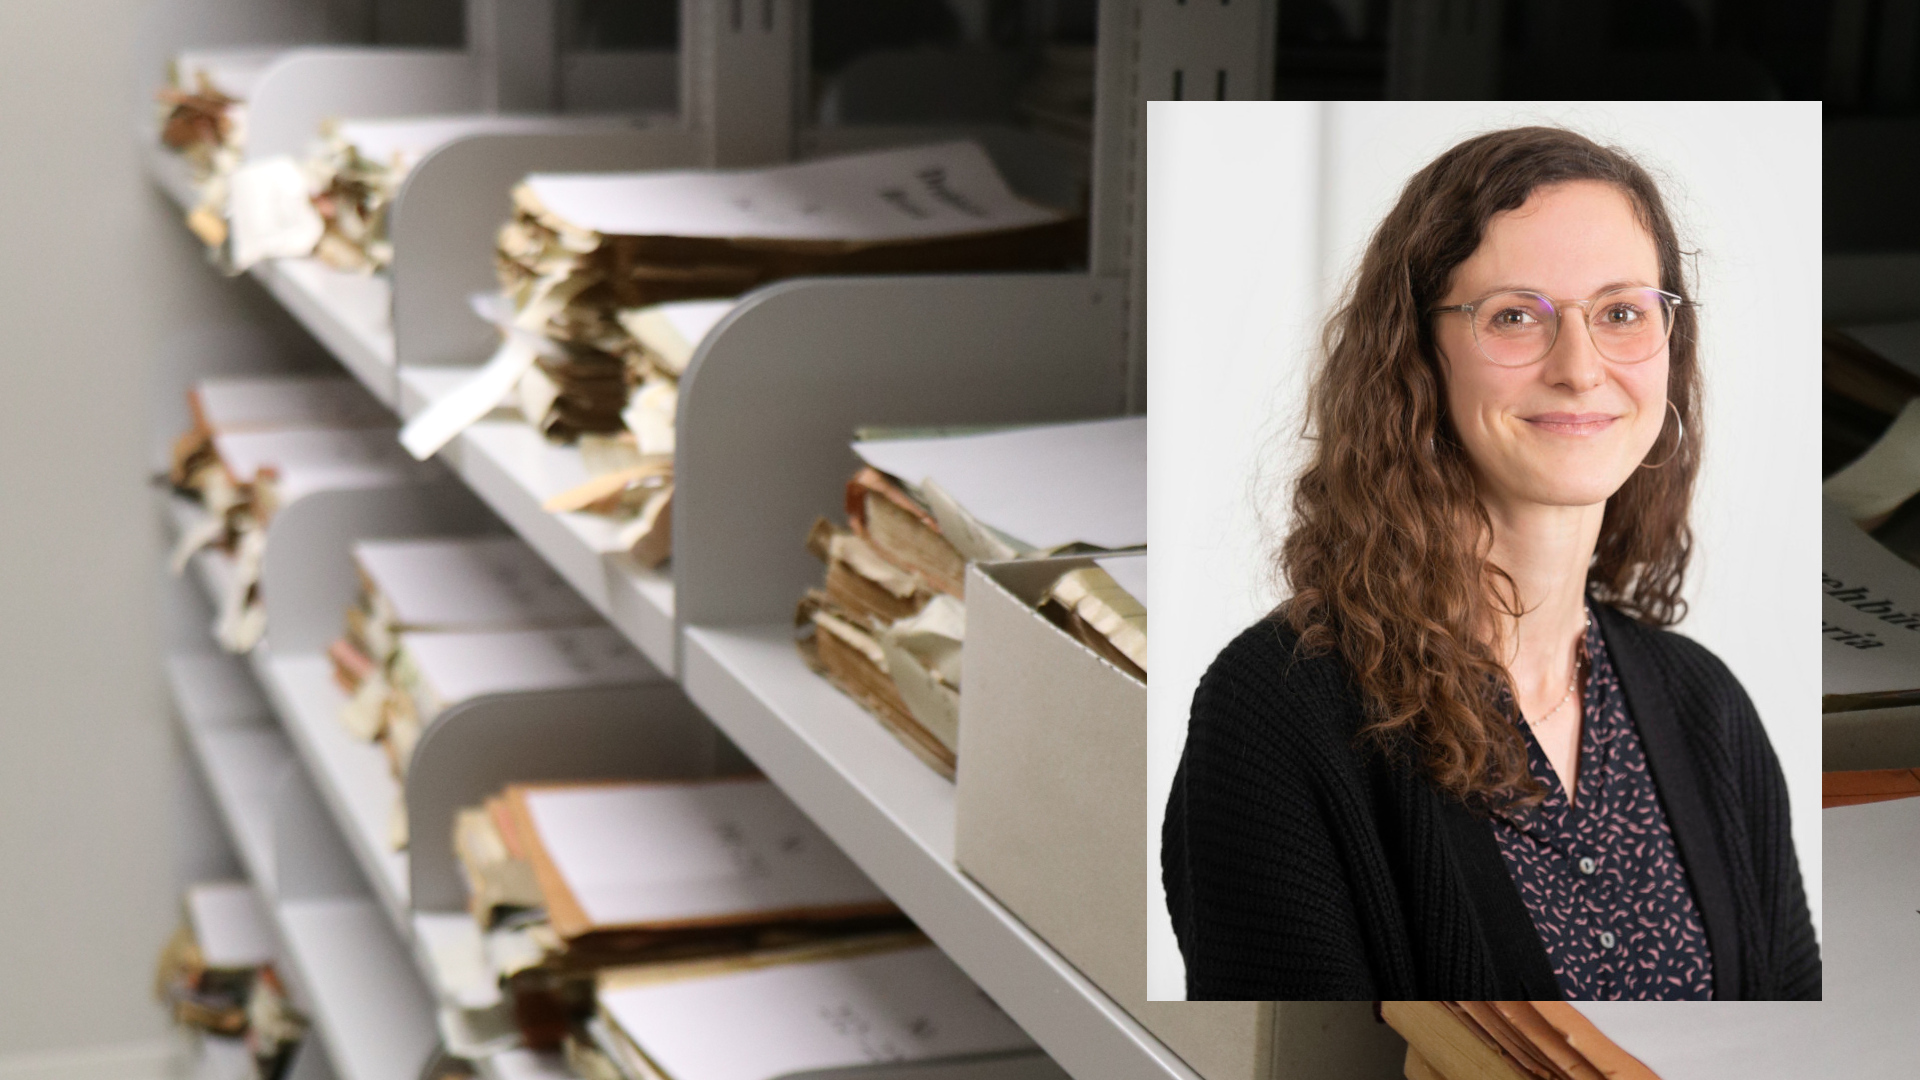 Es handelt sich um eine Bildcollage: Im Hintergrund sind Regale des Textarchivs mit Unterlagen und im Vordergrund ein Porträtfoto von Dr. Eva Hielscher.